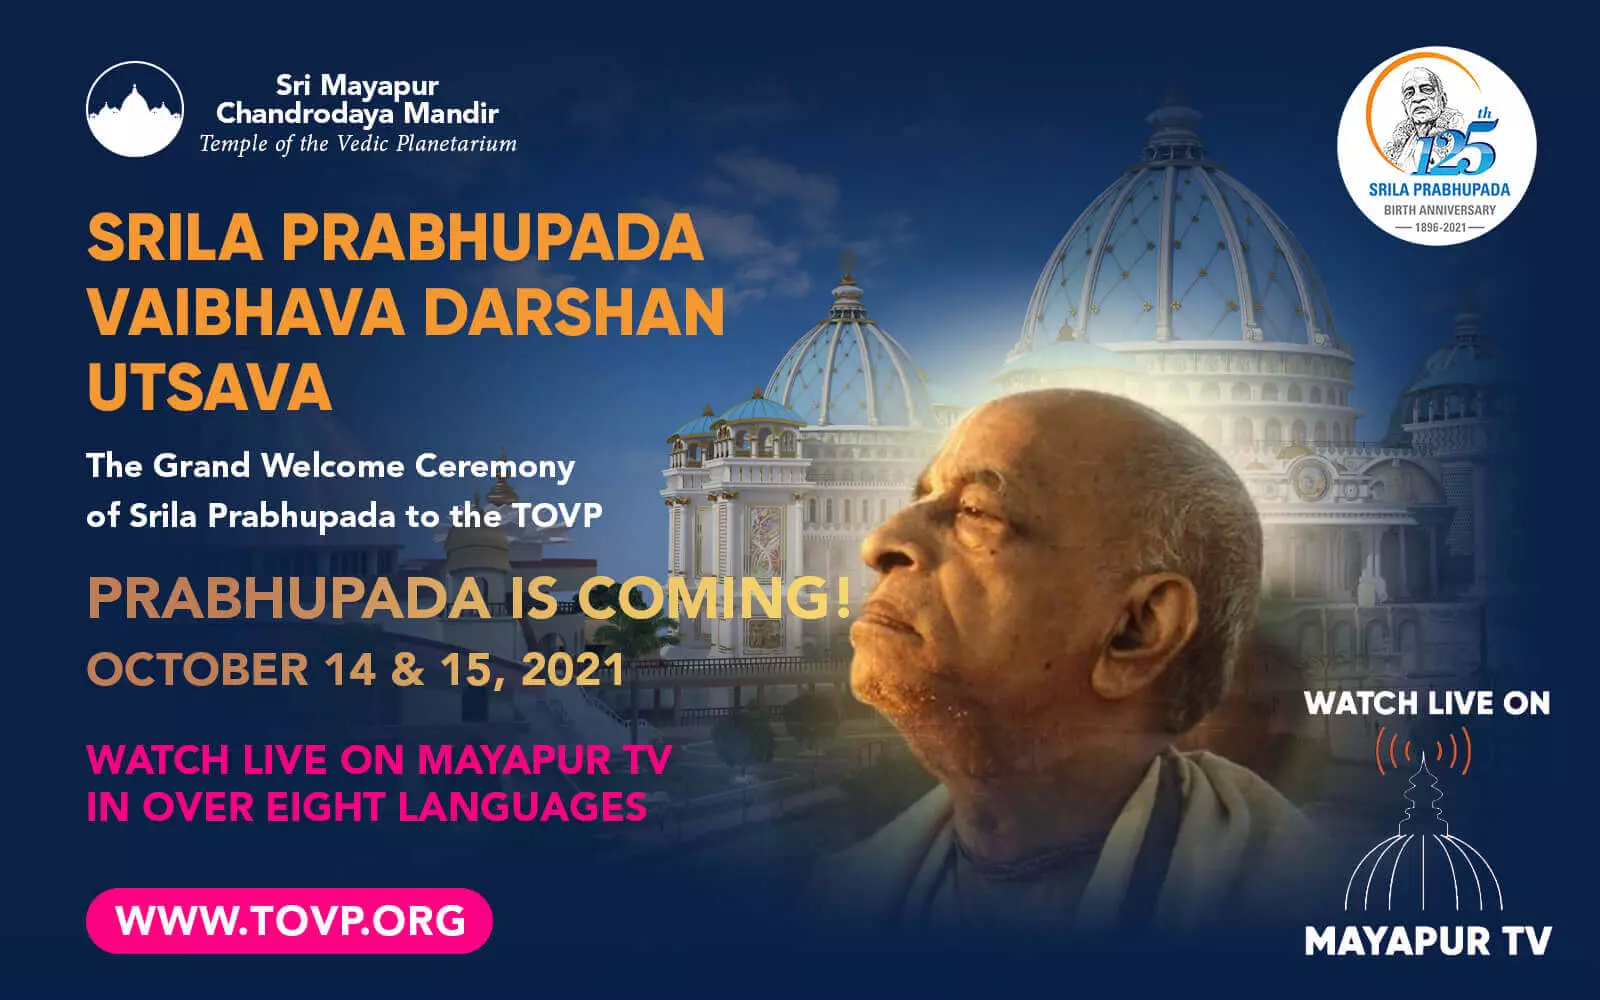 PRABHUPADA قادم إلى TOVP! شاهد البث المباشر على قناة Mayapur TV يومي 14 و 15 أكتوبر